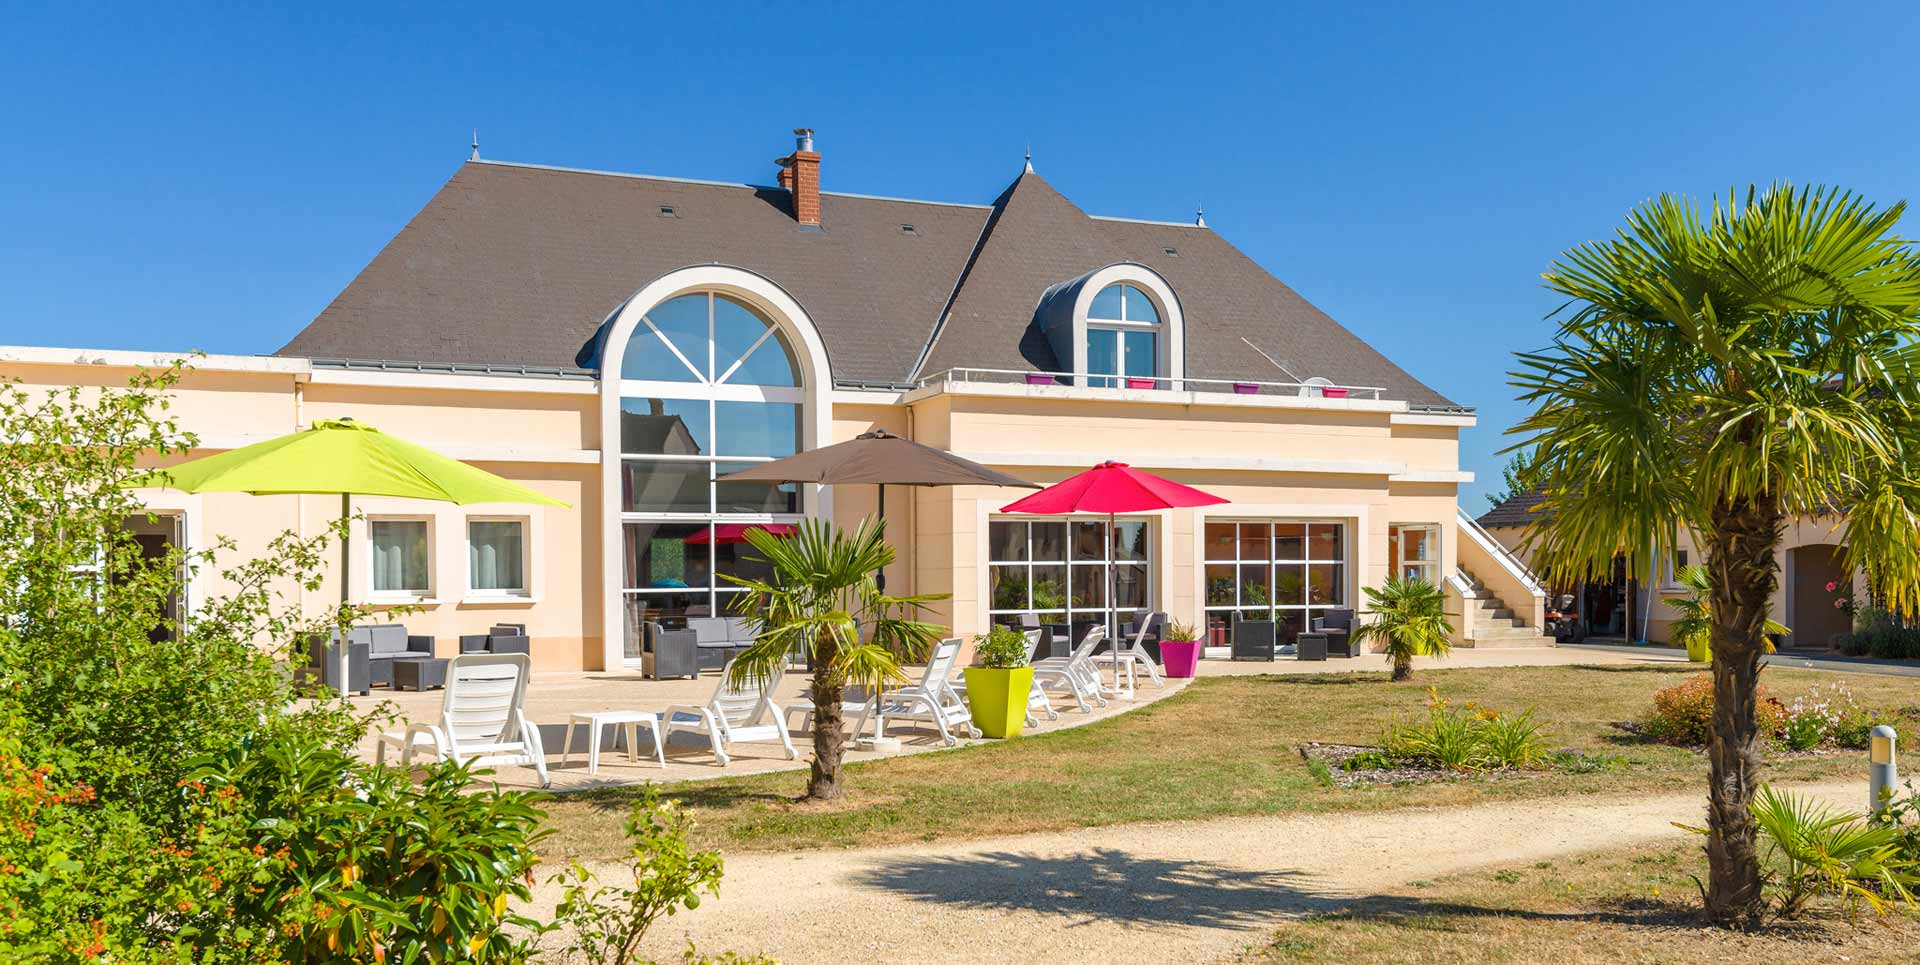 VENTE FLASH  vacances d'été en France jusqu'à -30% sur les appartements & maisons Lagrange (dès 169€ la semaine pour 4 pers.)